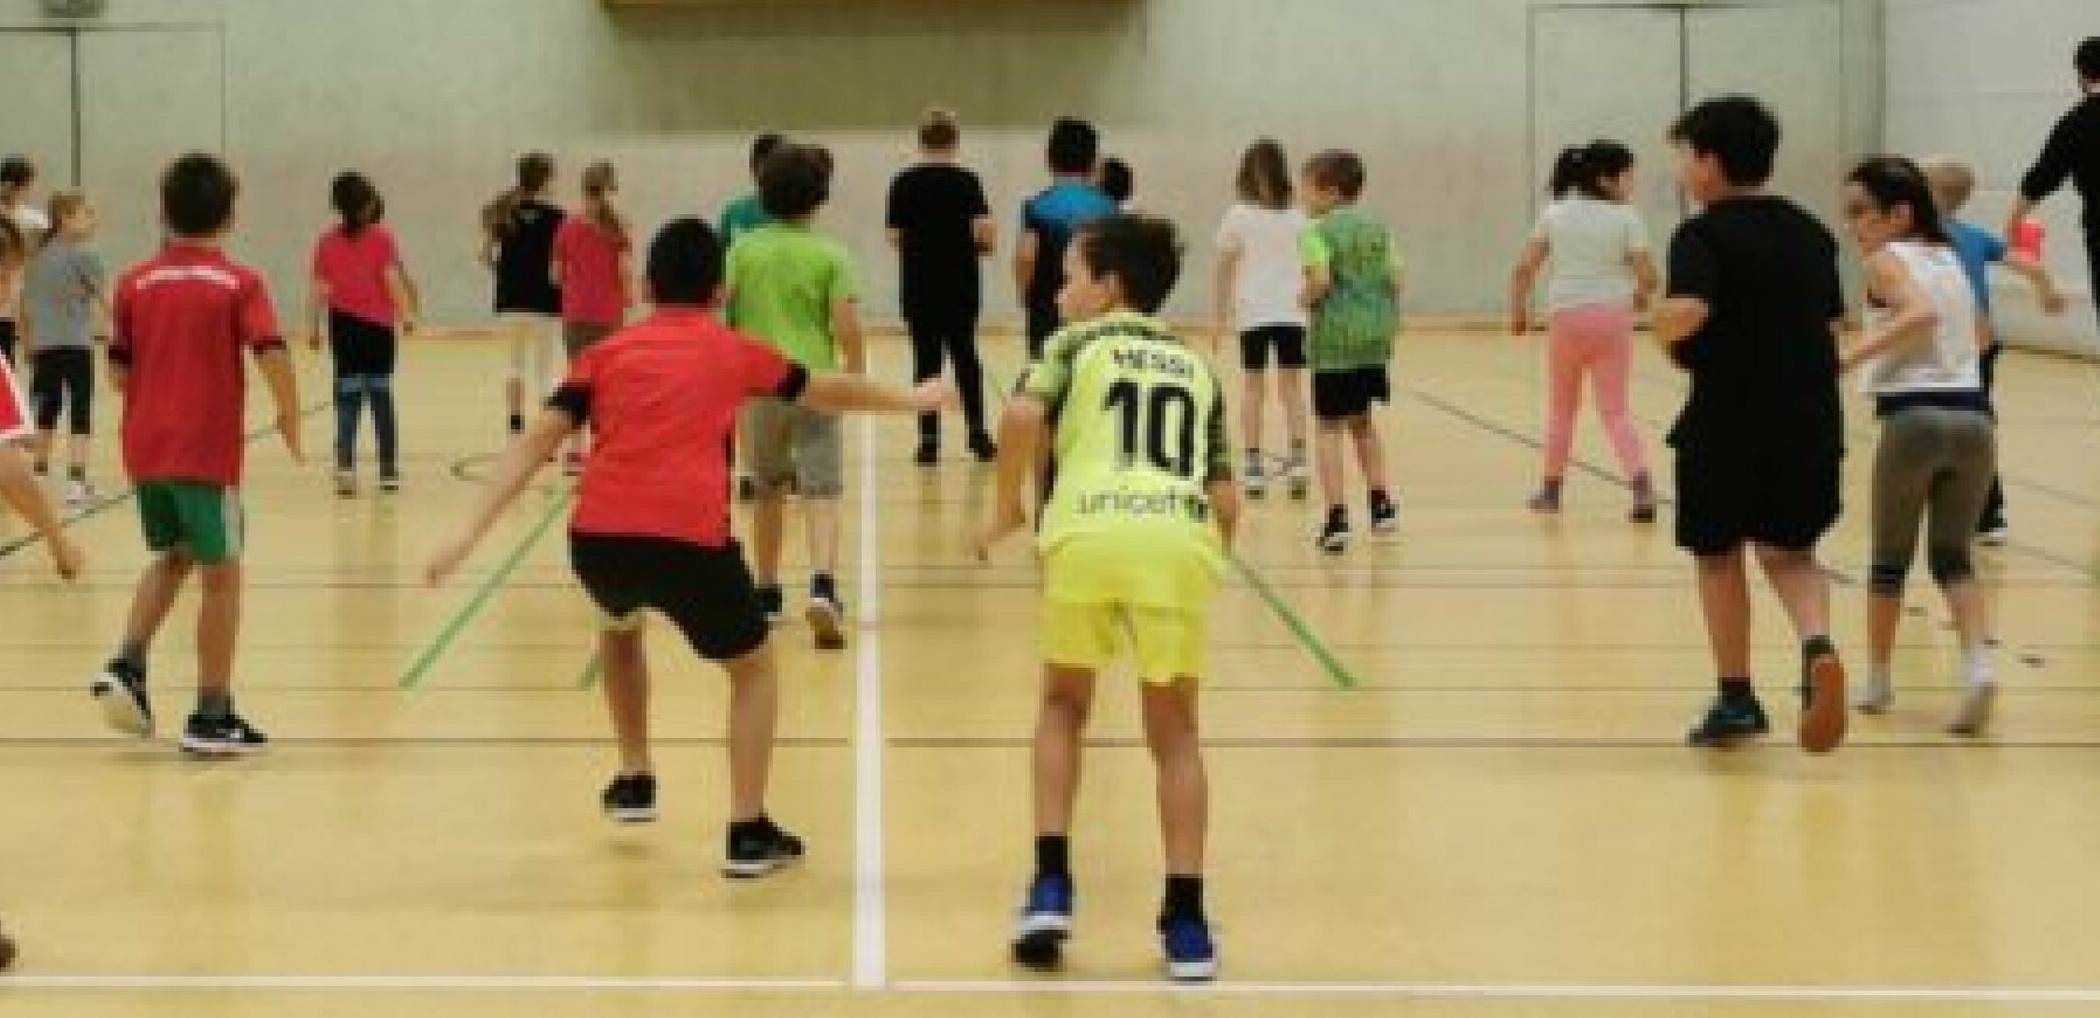  Am 1. Mai geht‘s in der Halle des Marie-Curie-Gymnasiums auf der Furth los: Kinder können sonntags neue Sportarten kennenlernen.  